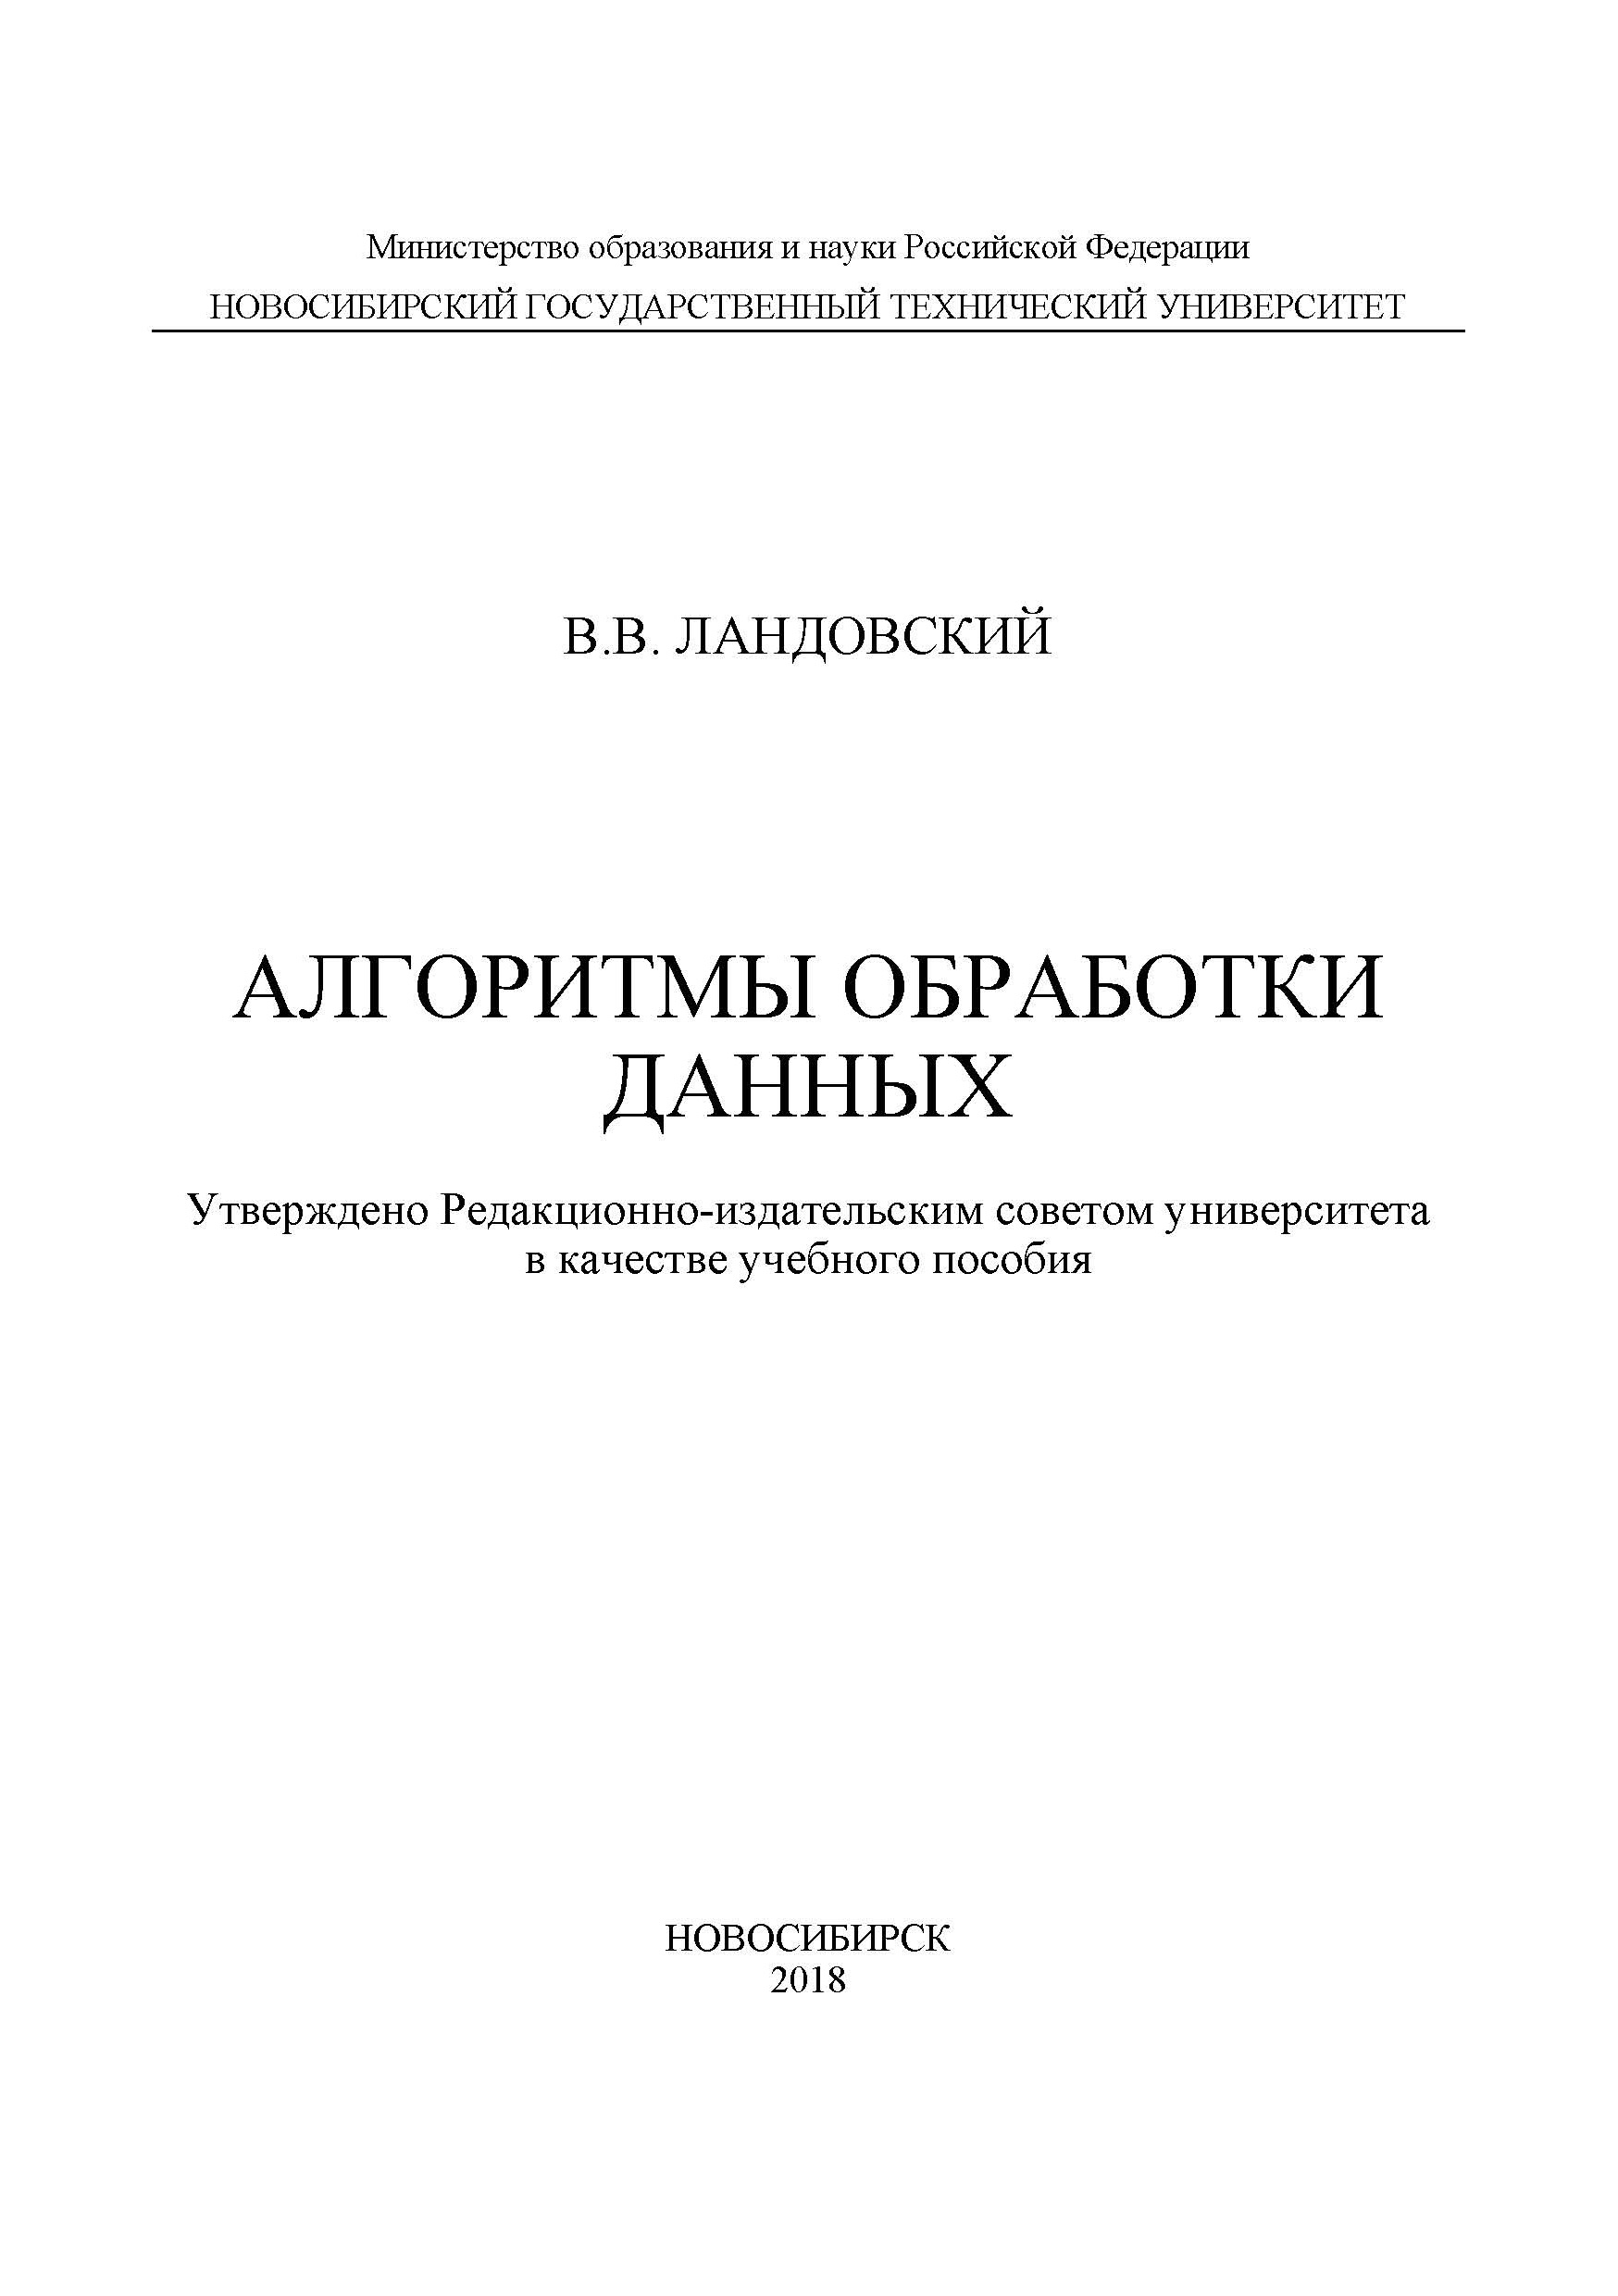 Книга  Алгоритмы обработки данных созданная Владимир Ландовский может относится к жанру информатика и вычислительная техника, программирование. Стоимость электронной книги Алгоритмы обработки данных с идентификатором 45254250 составляет 108.00 руб.